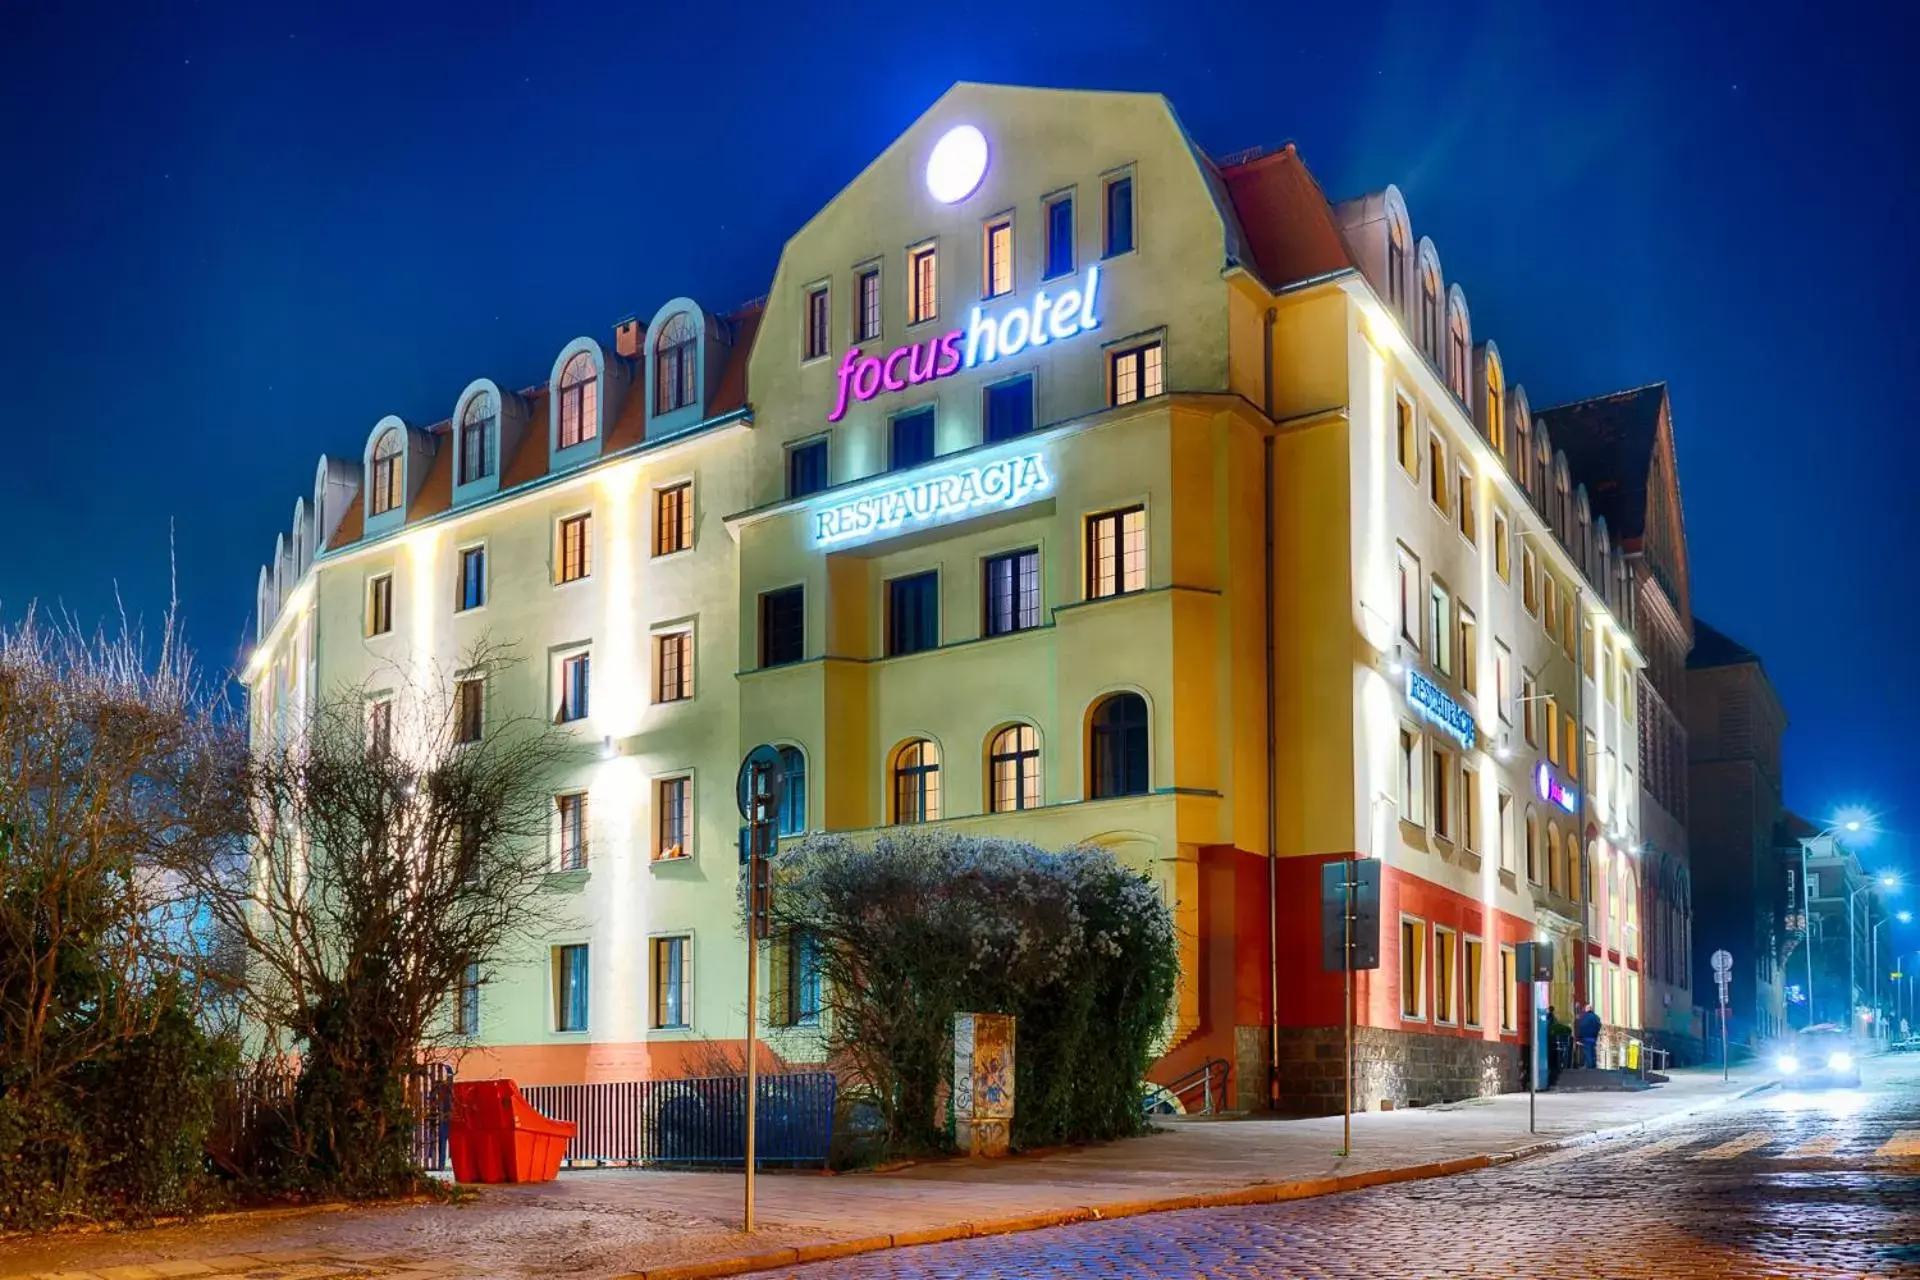 Property Building in Focus Hotel Szczecin